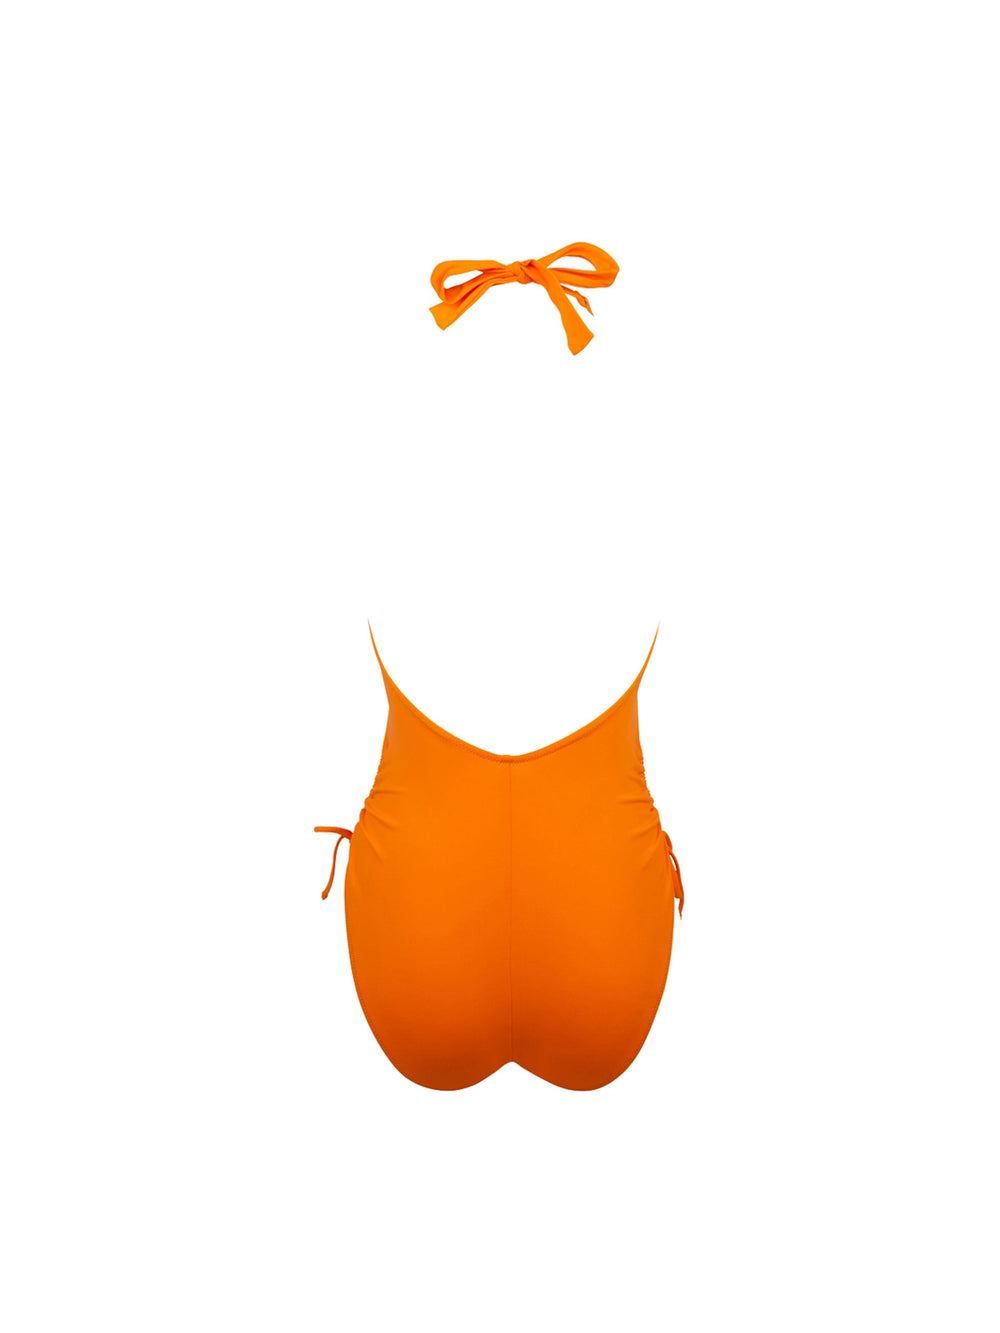 Antigel от Lise Charmel - Купальник с глубоким вырезом La Chiquissima Оранжевый купальник с глубоким вырезом Antigel от Lise Charmel Купальники